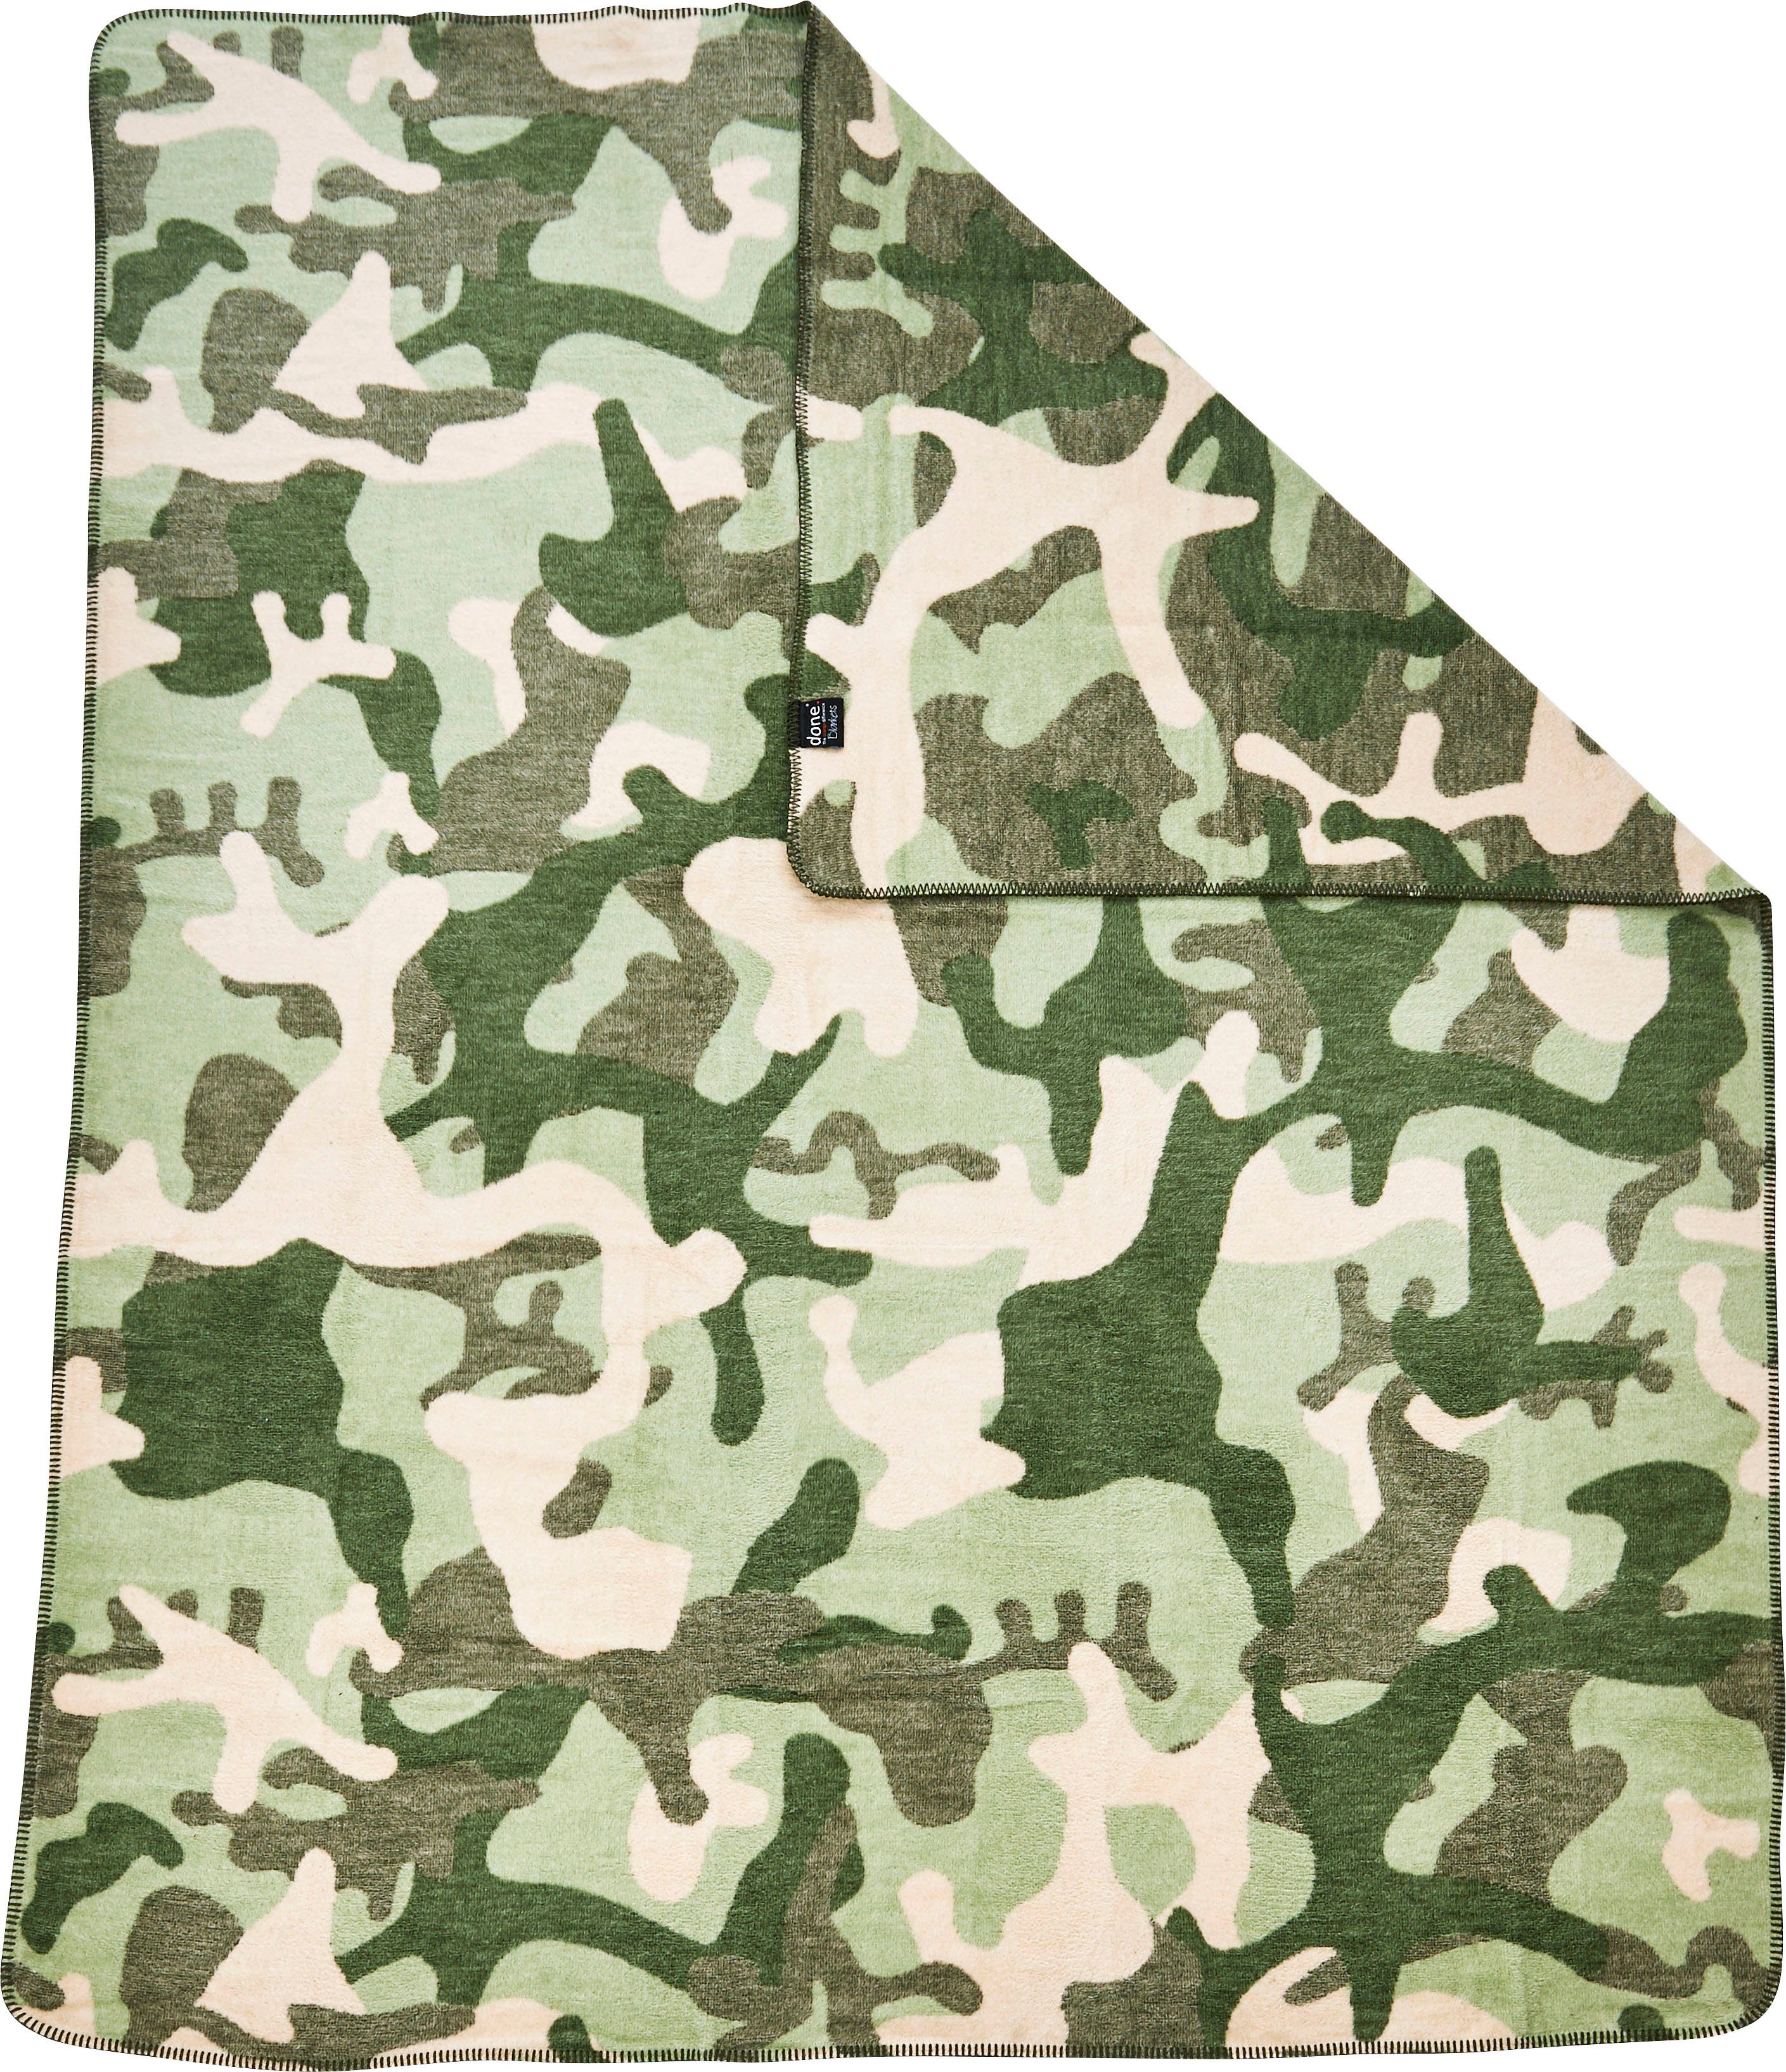 Wohndecke Camouflage, done.®, Wohndecke Kuscheldecke einfassender Ziernaht, mit khaki/grün/beige